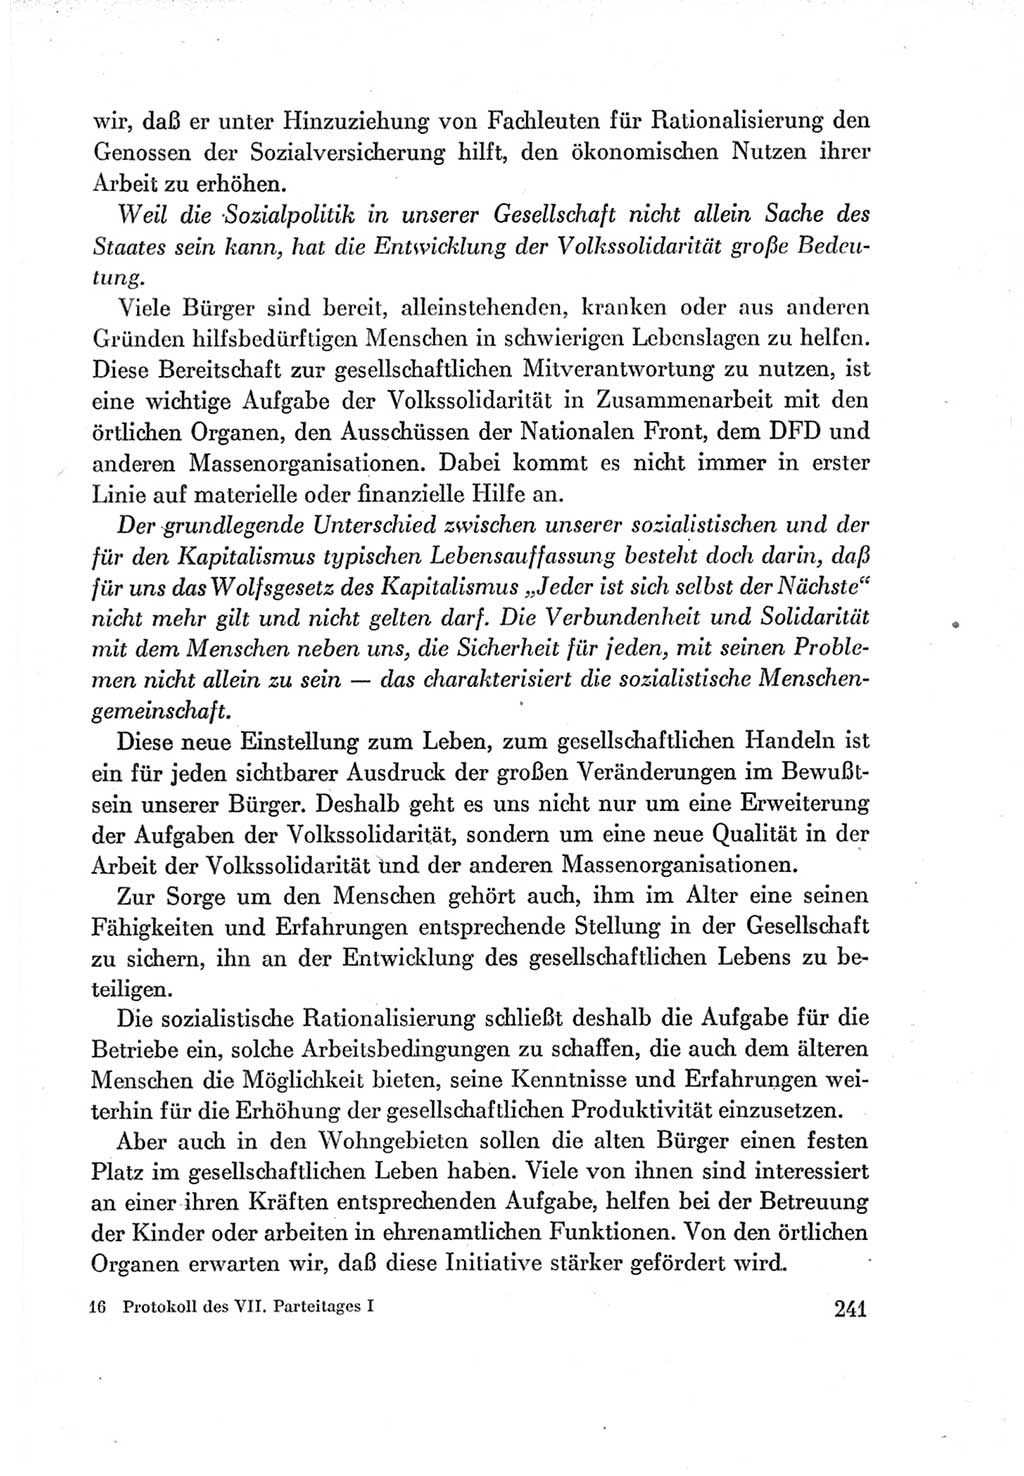 Protokoll der Verhandlungen des Ⅶ. Parteitages der Sozialistischen Einheitspartei Deutschlands (SED) [Deutsche Demokratische Republik (DDR)] 1967, Band Ⅰ, Seite 241 (Prot. Verh. Ⅶ. PT SED DDR 1967, Bd. Ⅰ, S. 241)